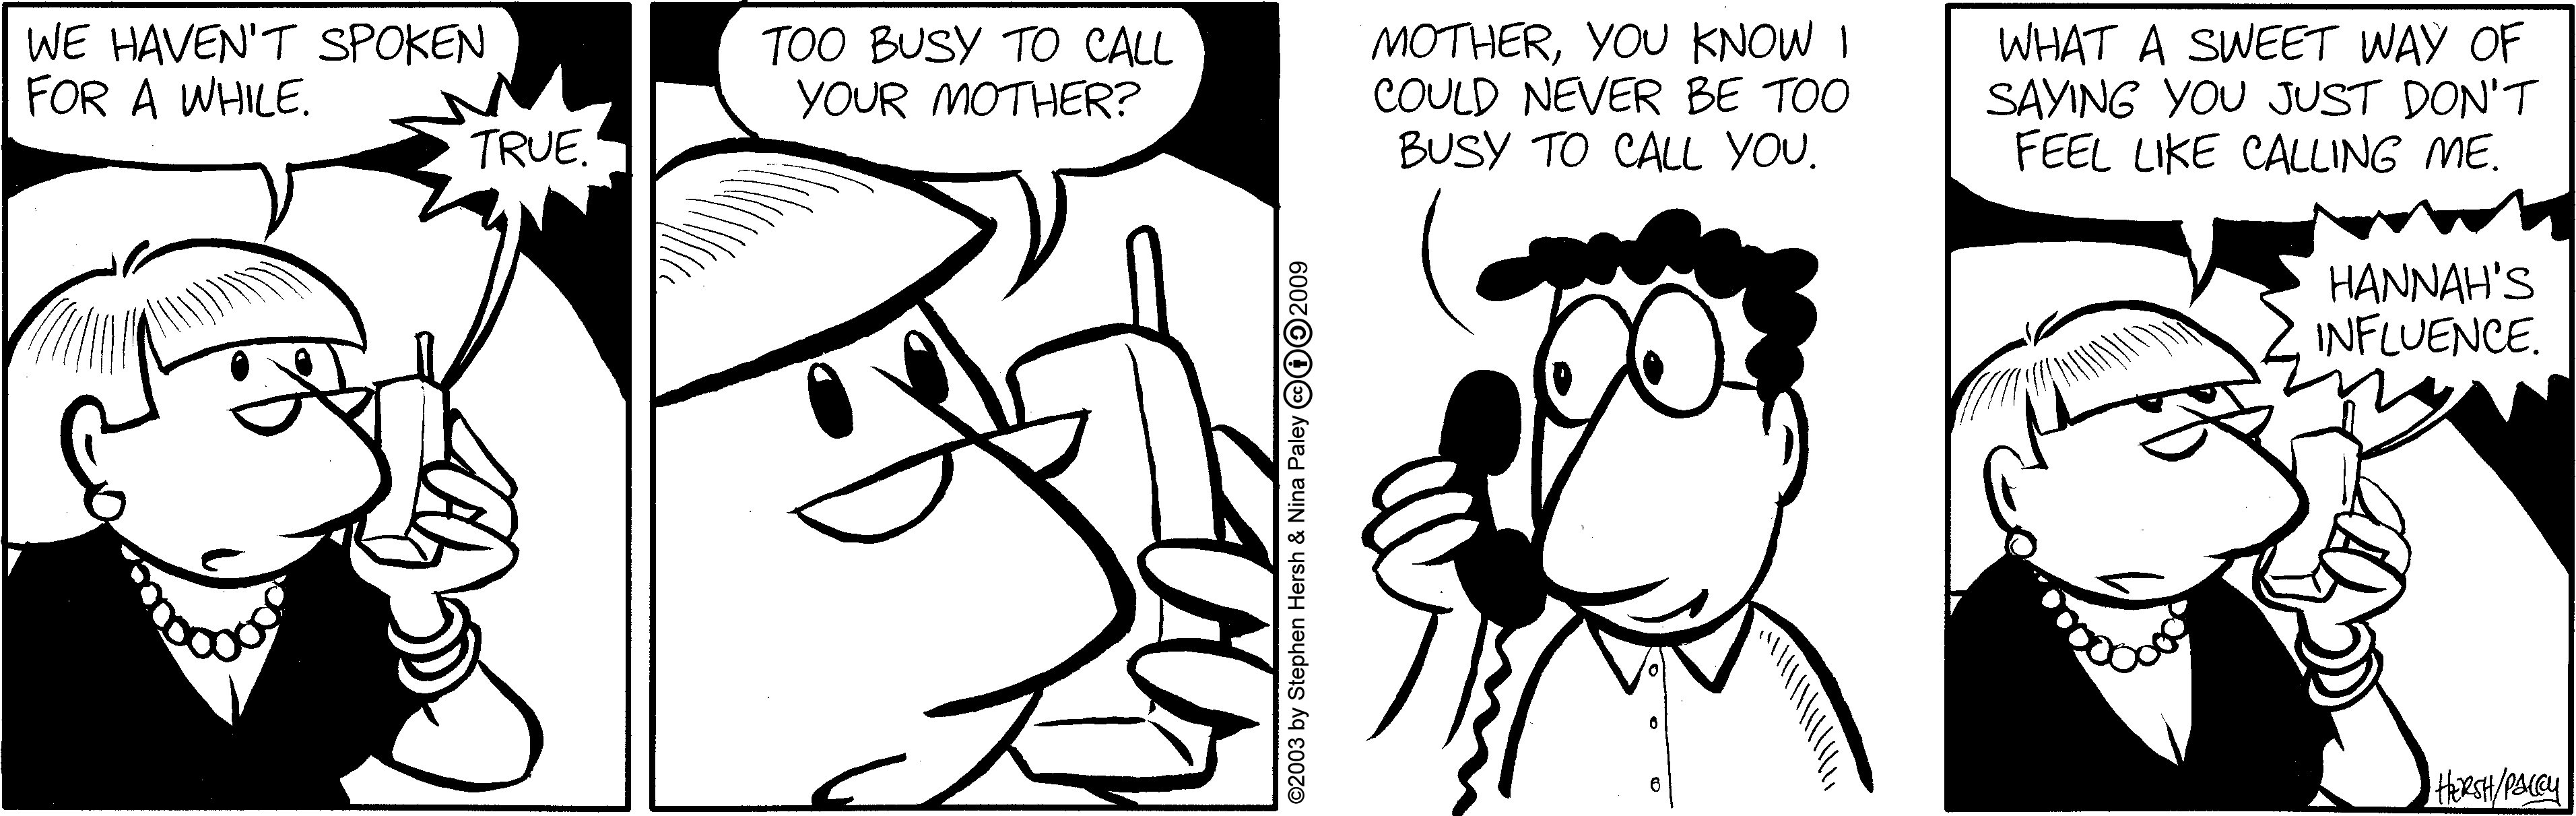 Callingmom